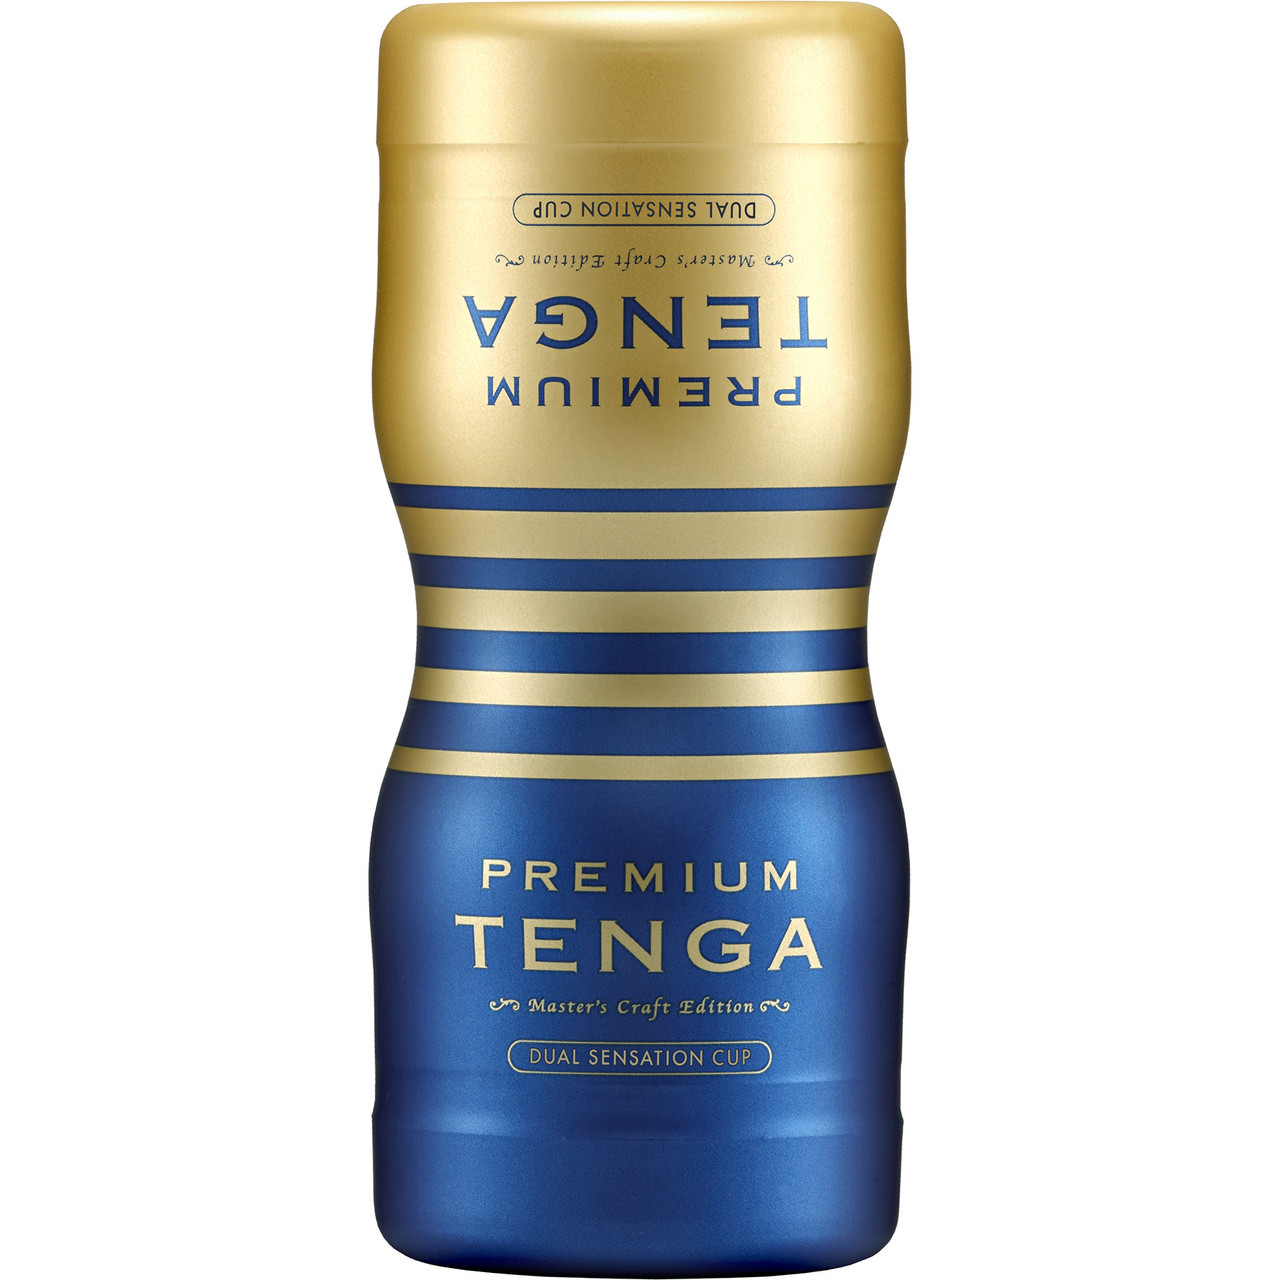 TENGA Cool Original Vacuum Cup, Blue